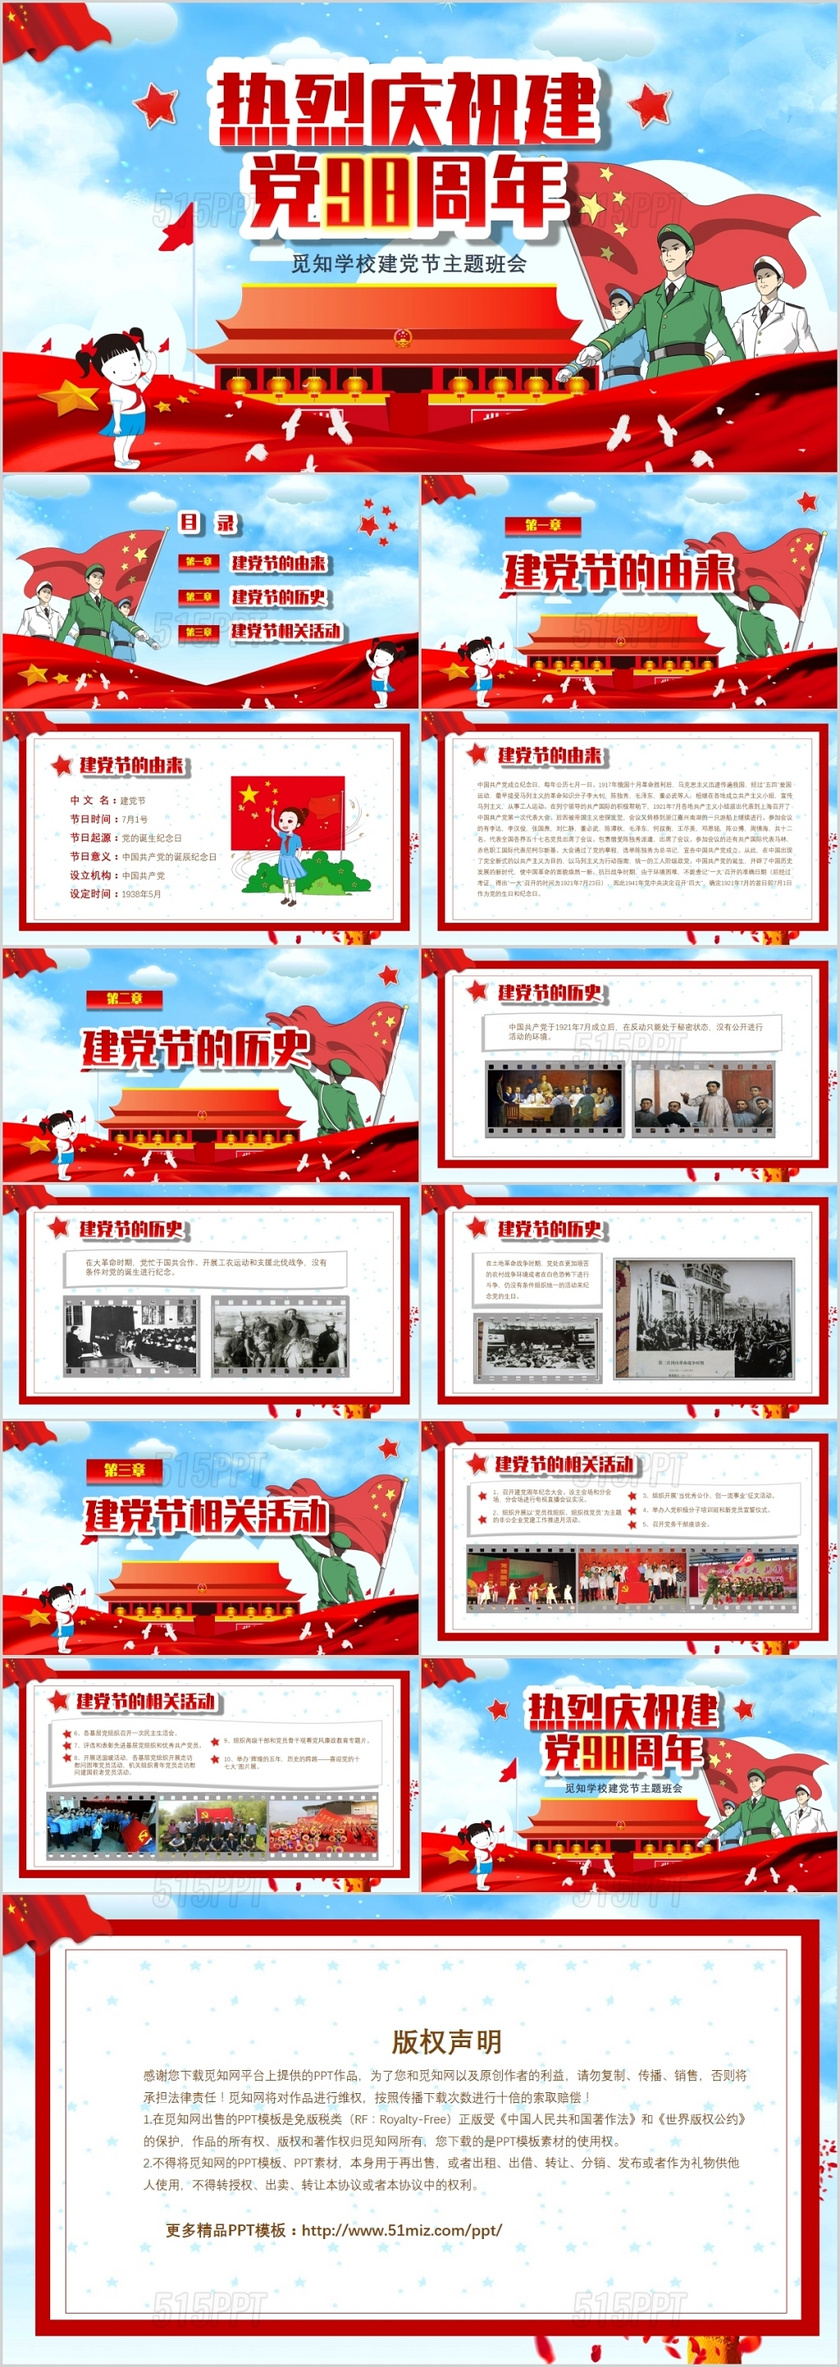 红色儿童卡通热烈庆祝七一建党节98周年主题班会PPt